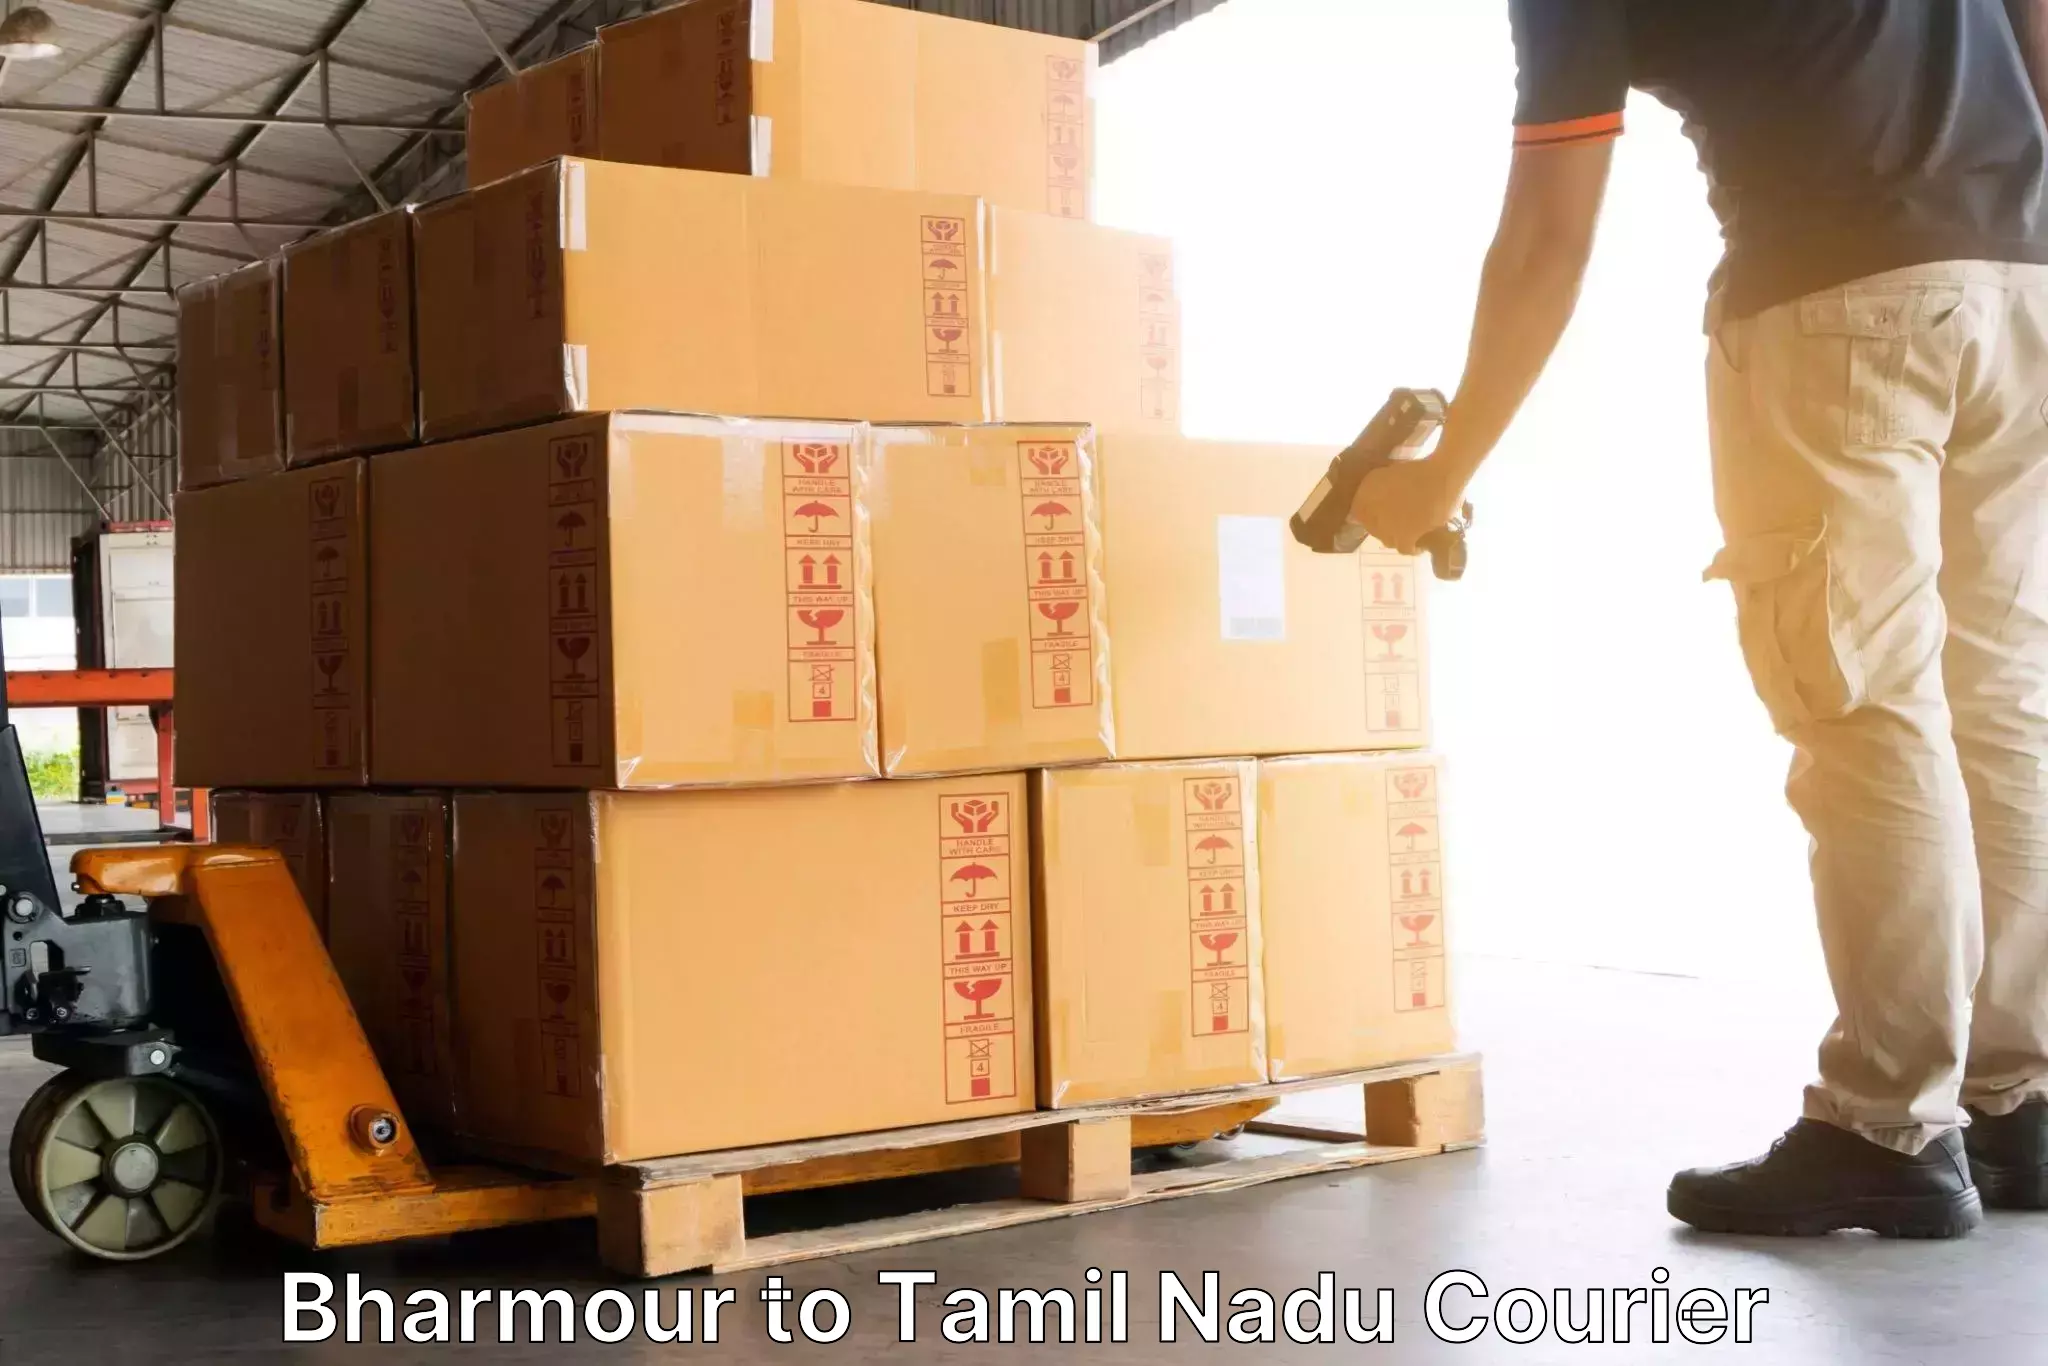 Courier insurance Bharmour to Tiruvallur